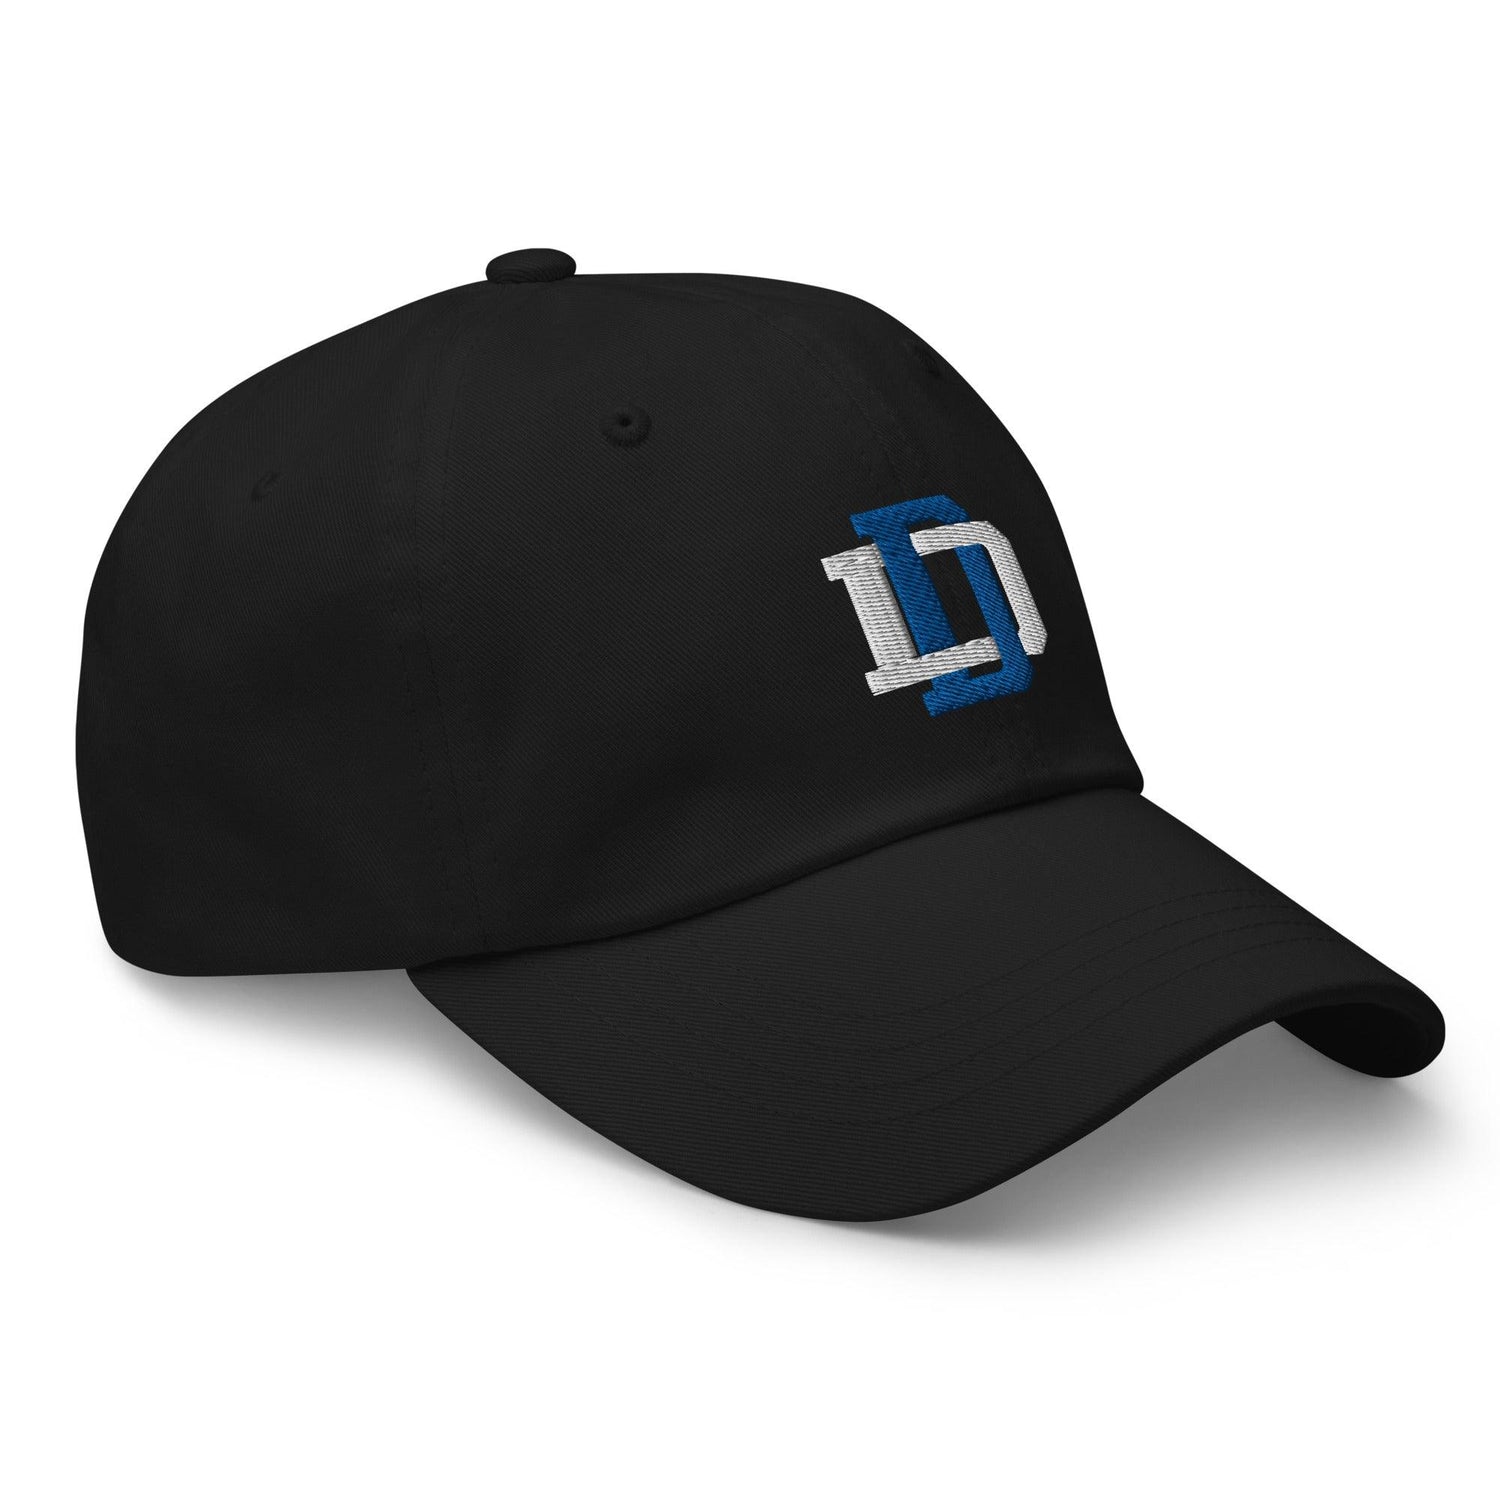 Deuce Dean “DD” hat - Fan Arch